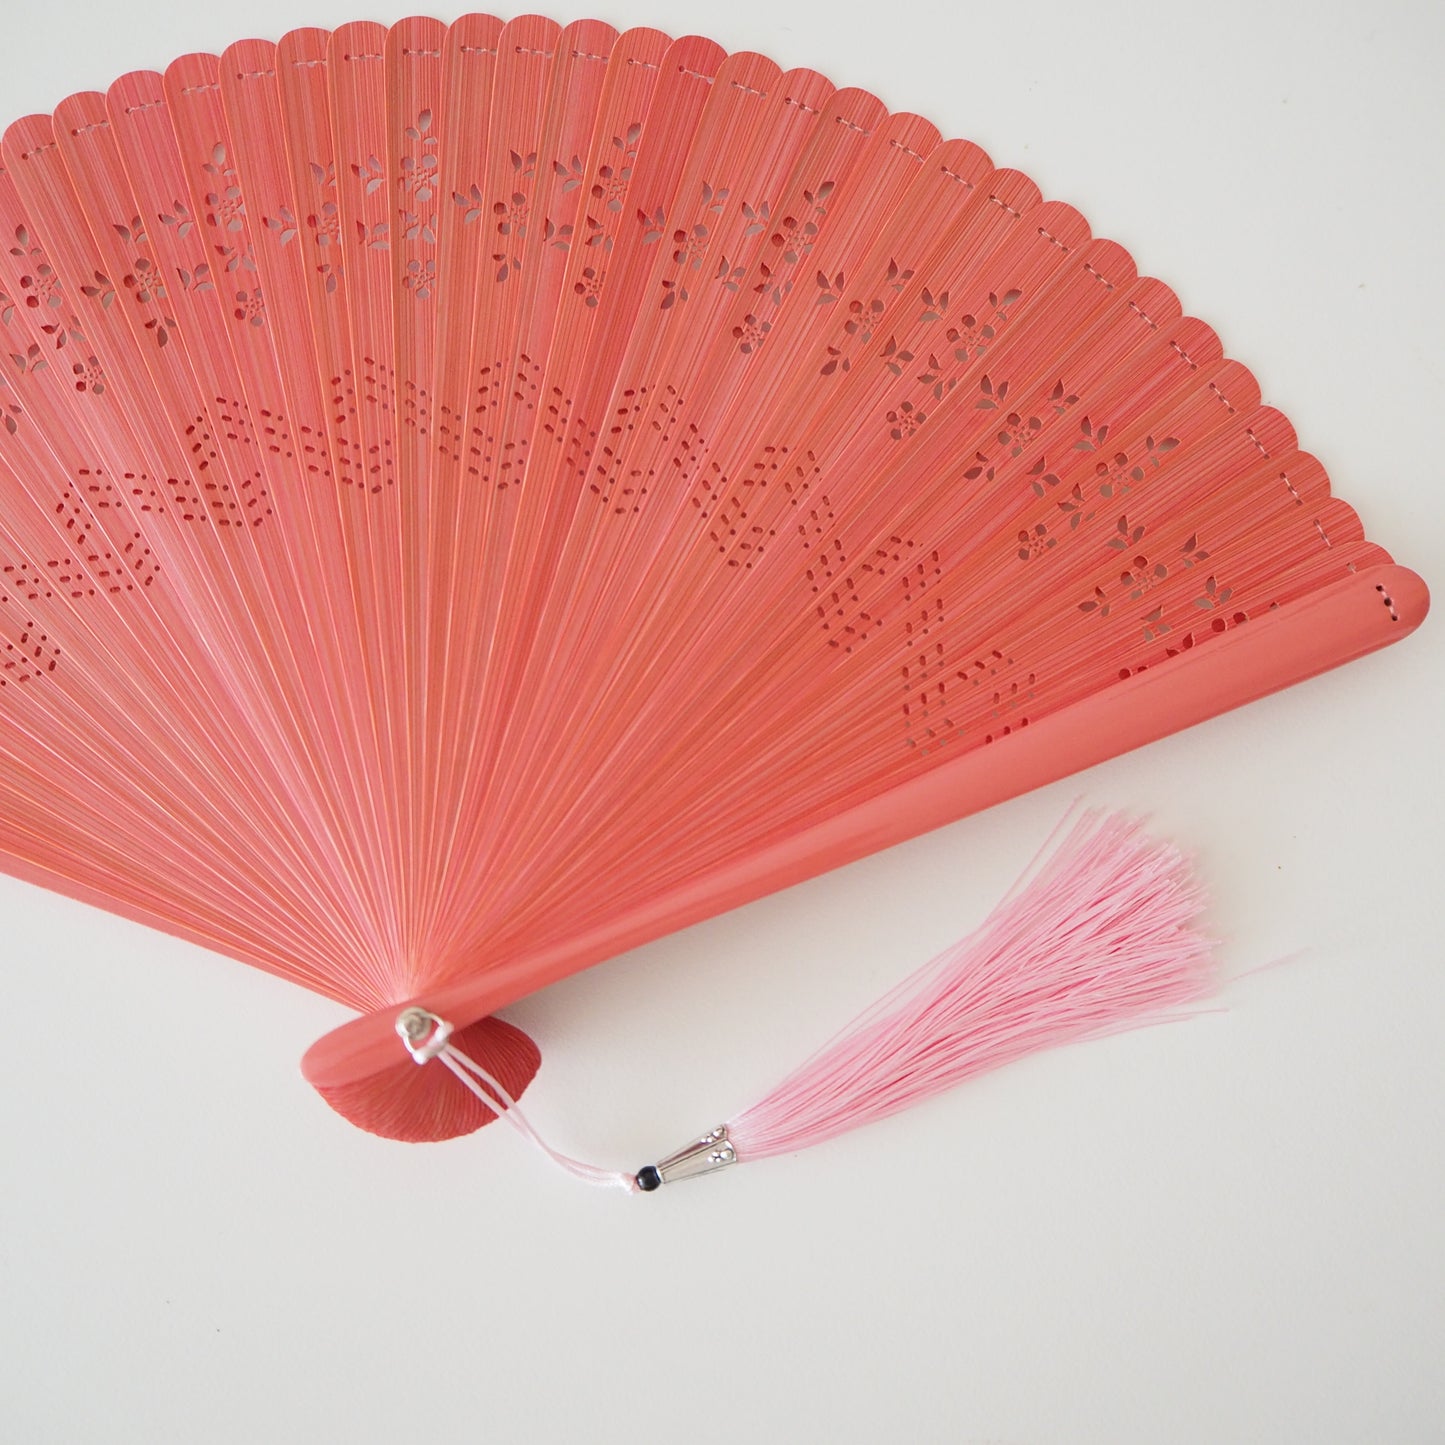 Wooden Folding Fan - Pink Plum